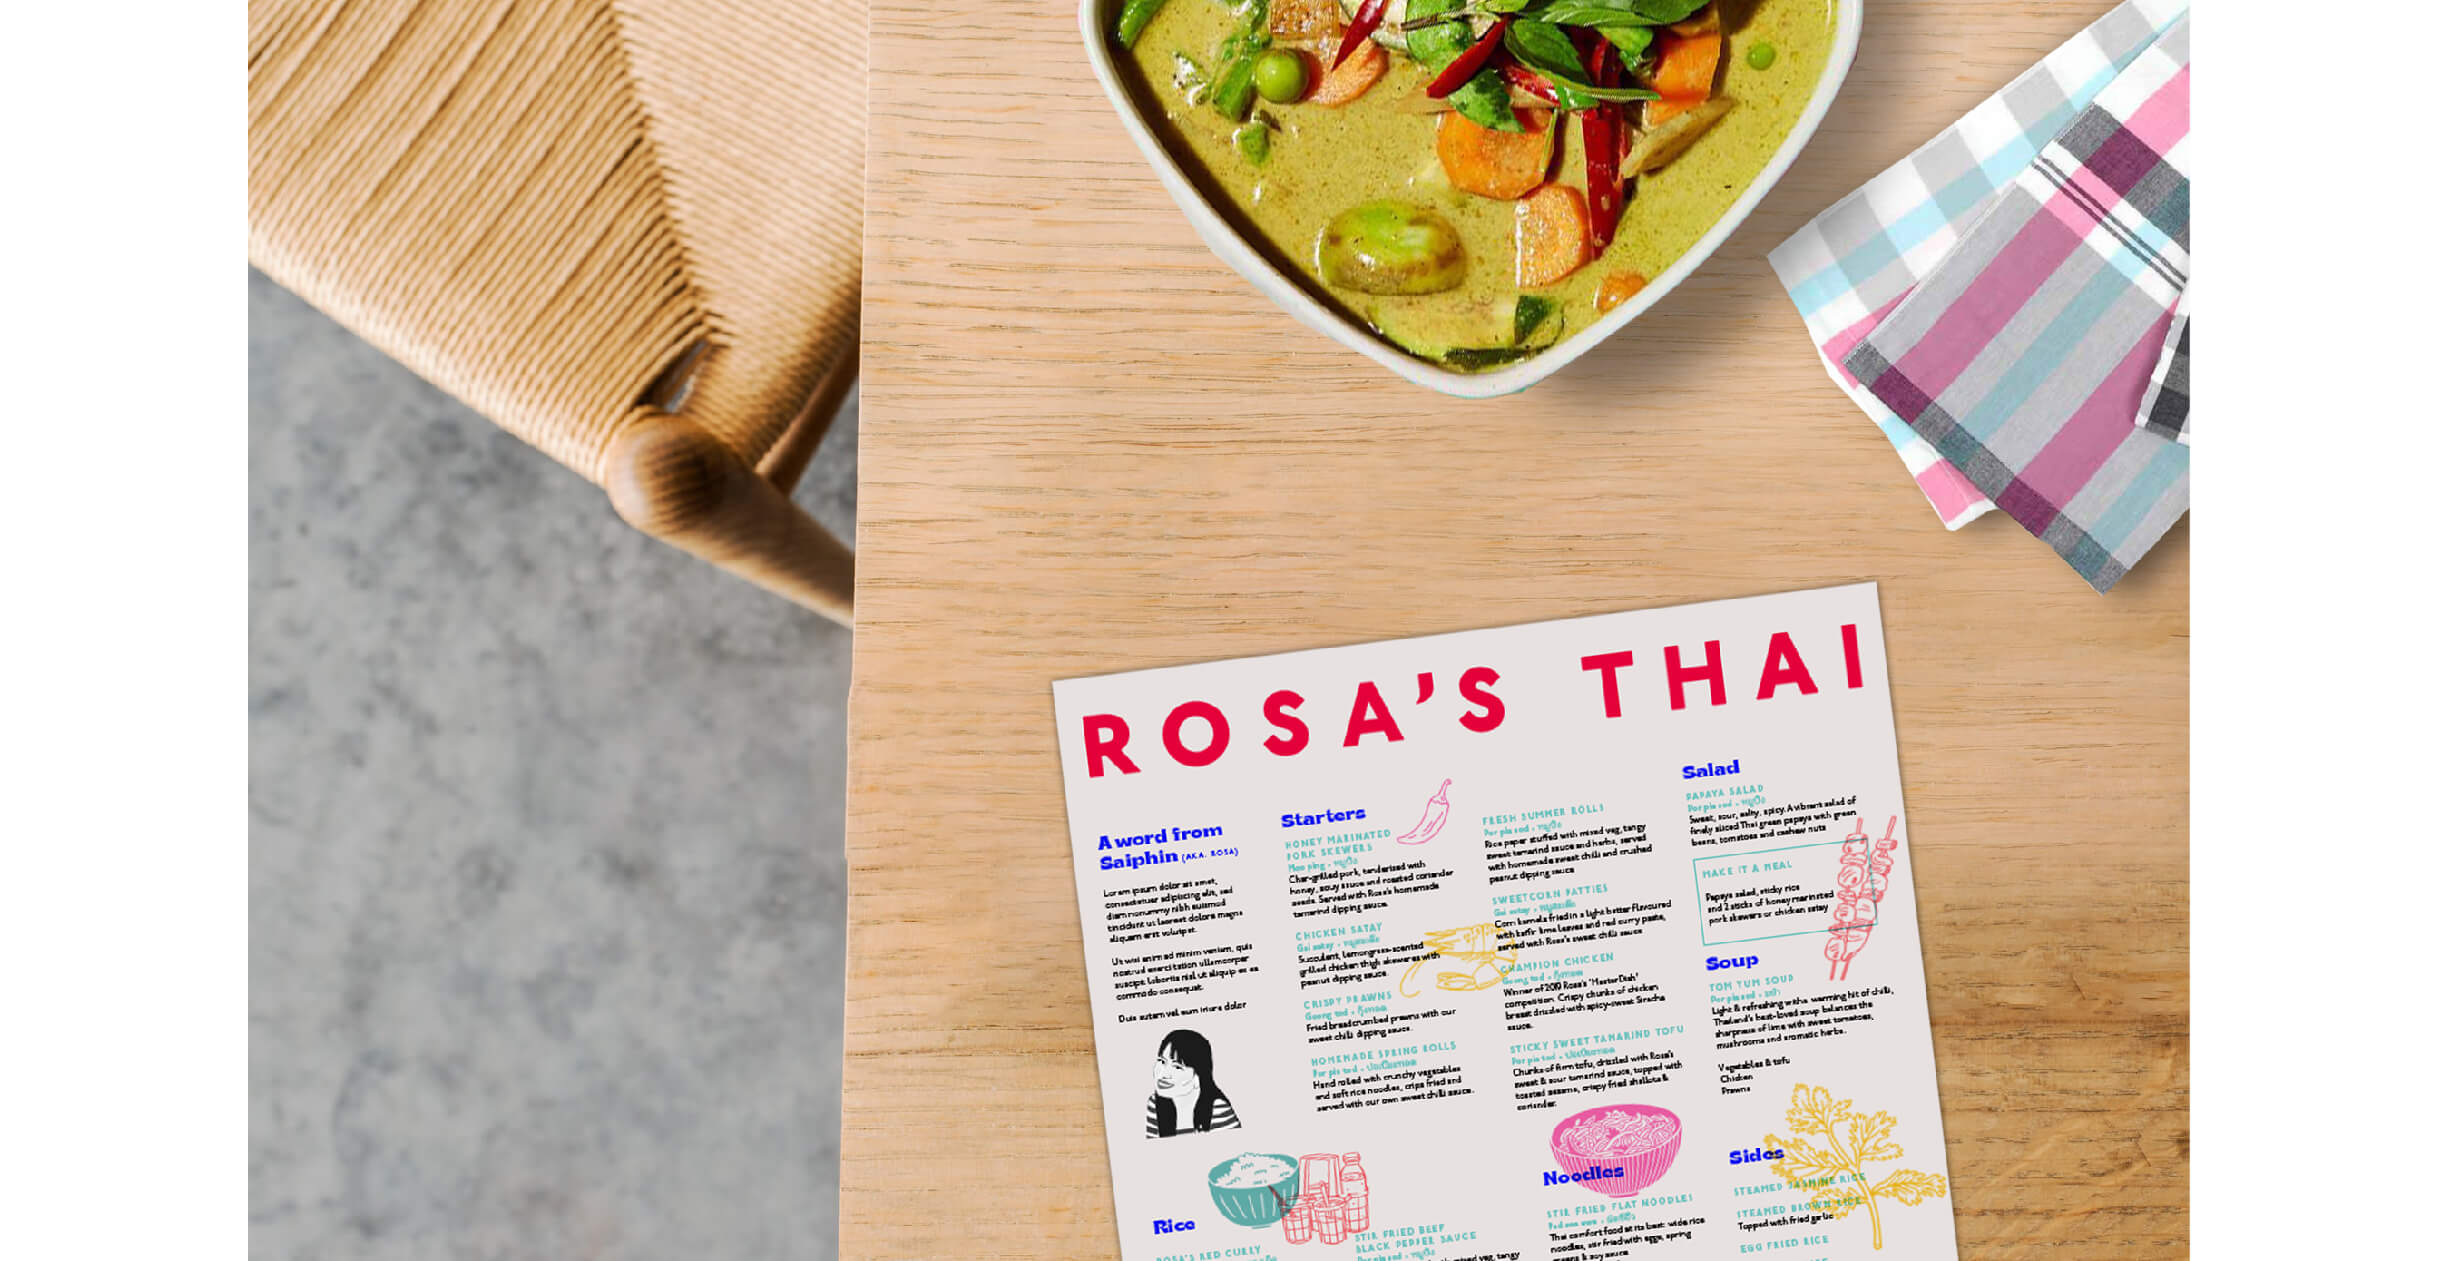 Rosa's Thai menu